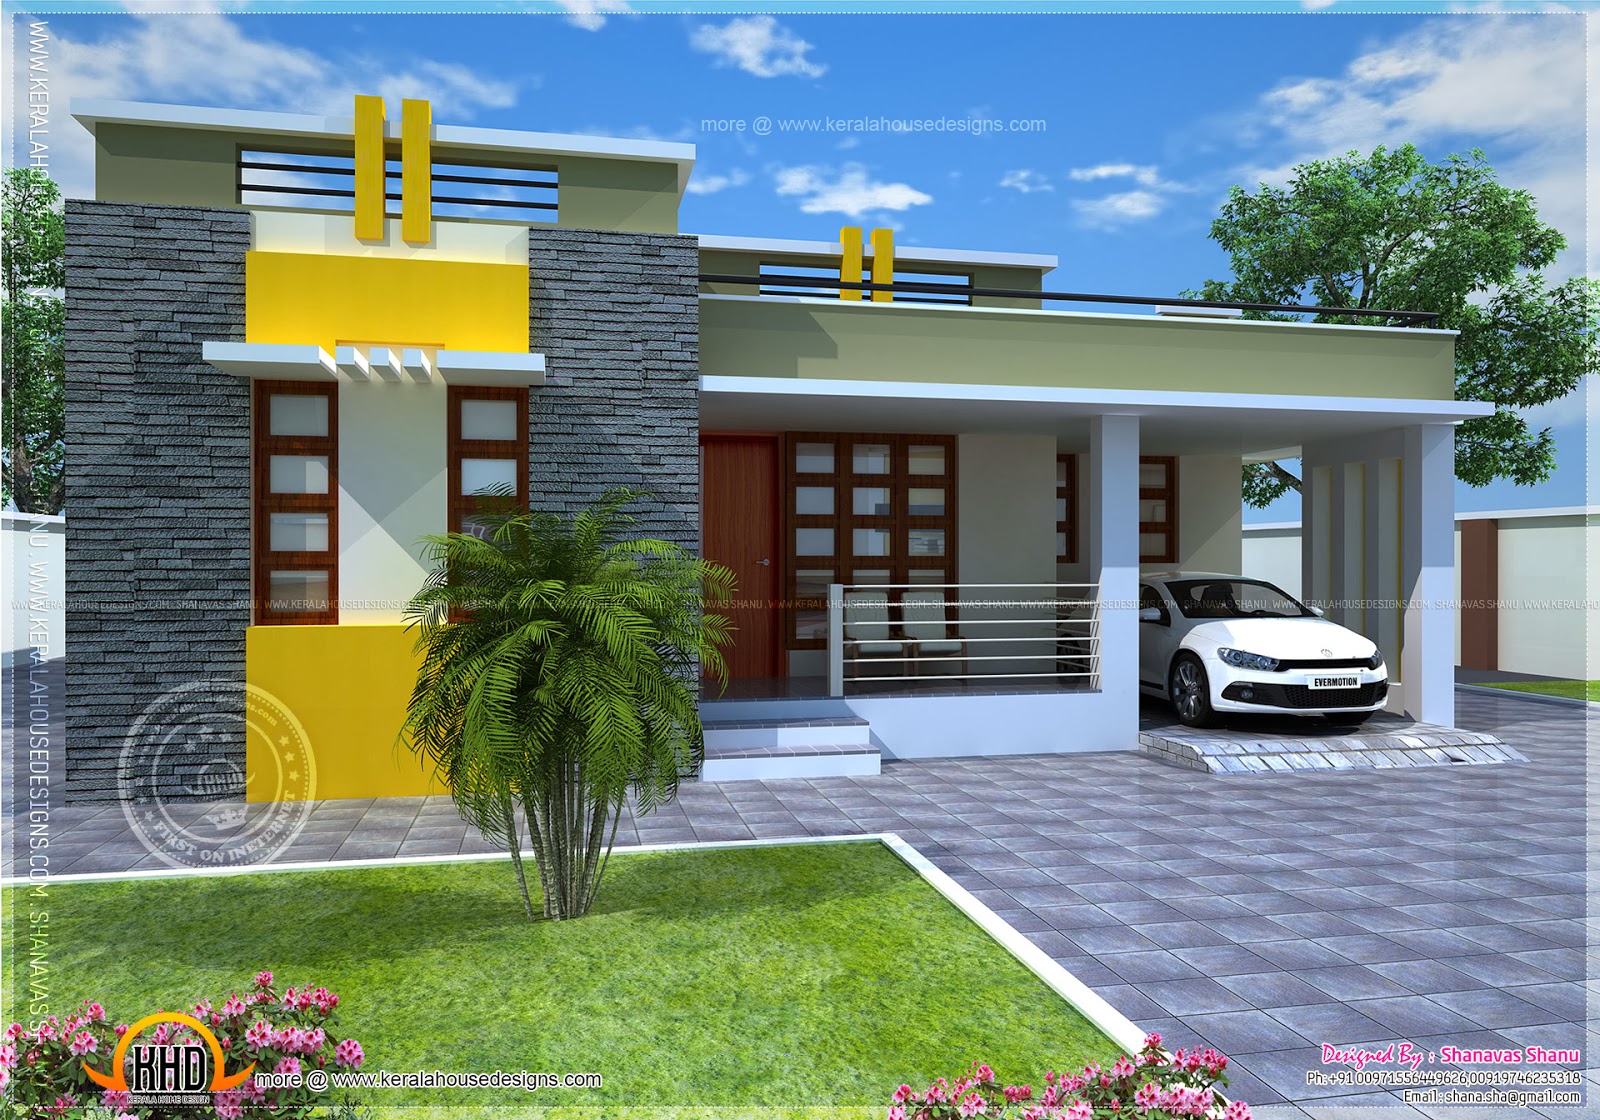  House  plan  of a small modern  villa Kerala home  design 